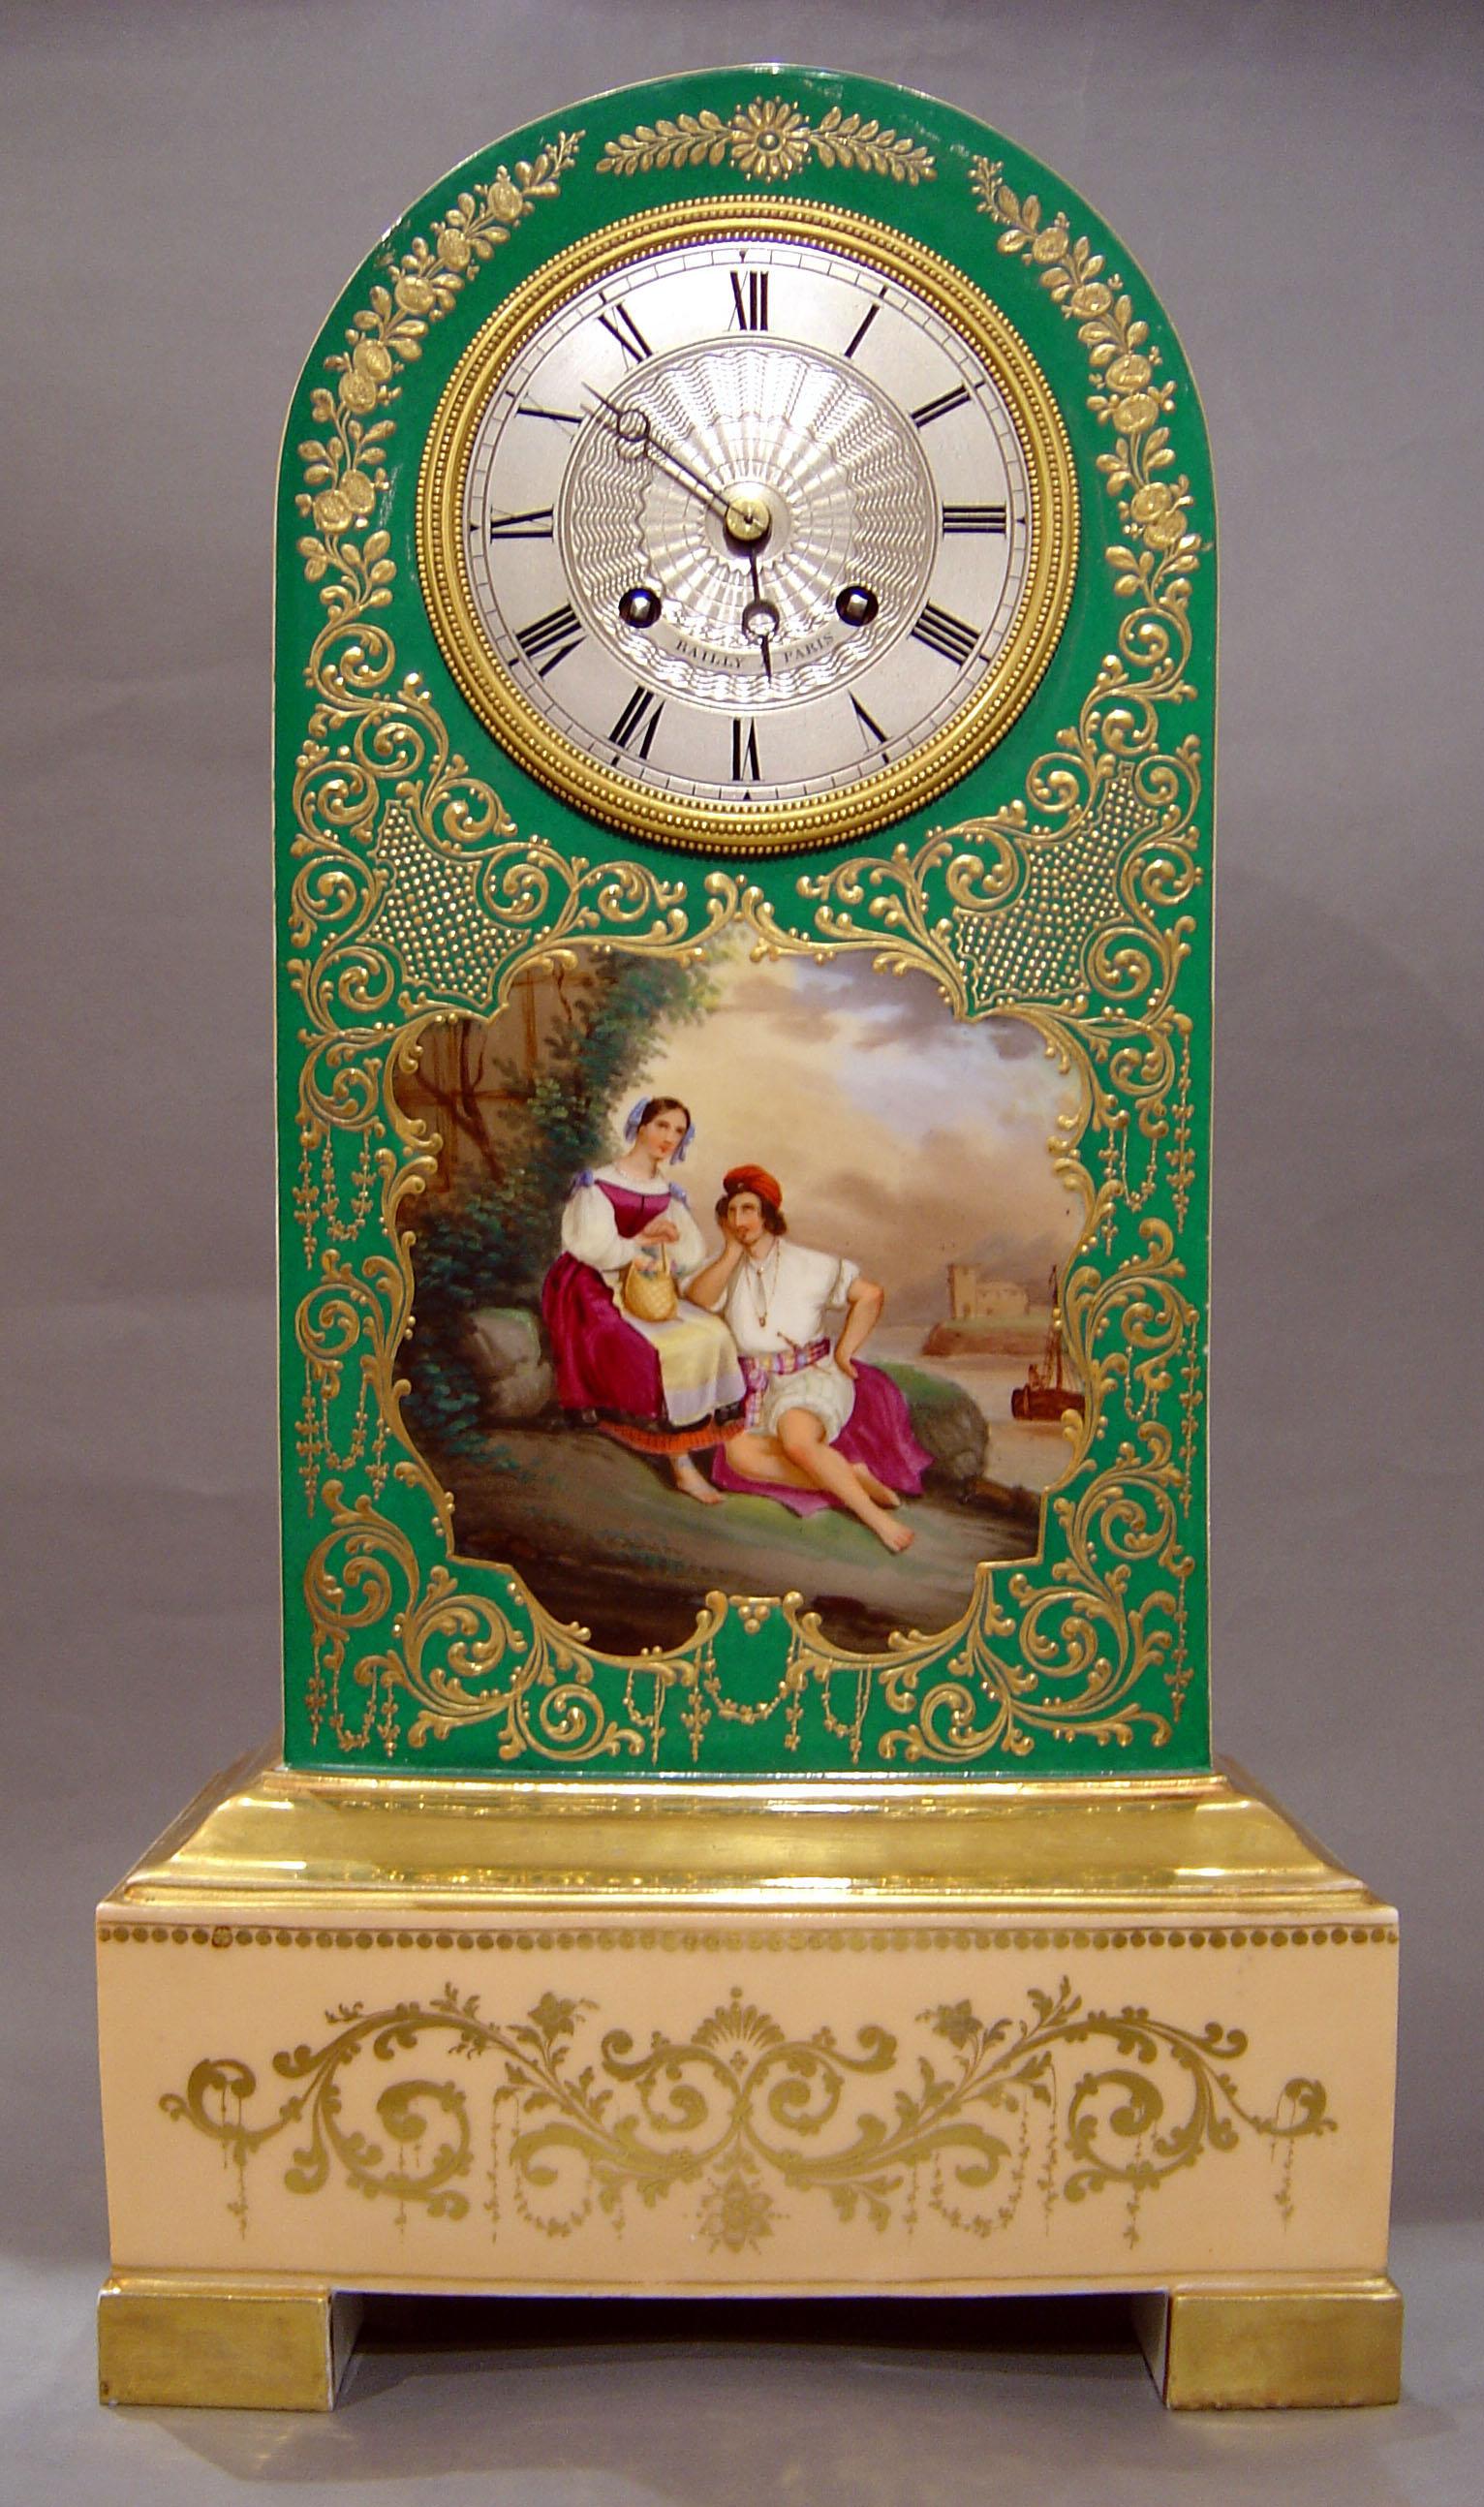 Une horloge très inhabituelle en porcelaine de Paris dans la forme portée de la période Charles X. Boîtier probablement réalisé par Jacob Petit avec un décor sur toute la surface en crème et une fine dorure. La plaque à l'avant avec deux personnages